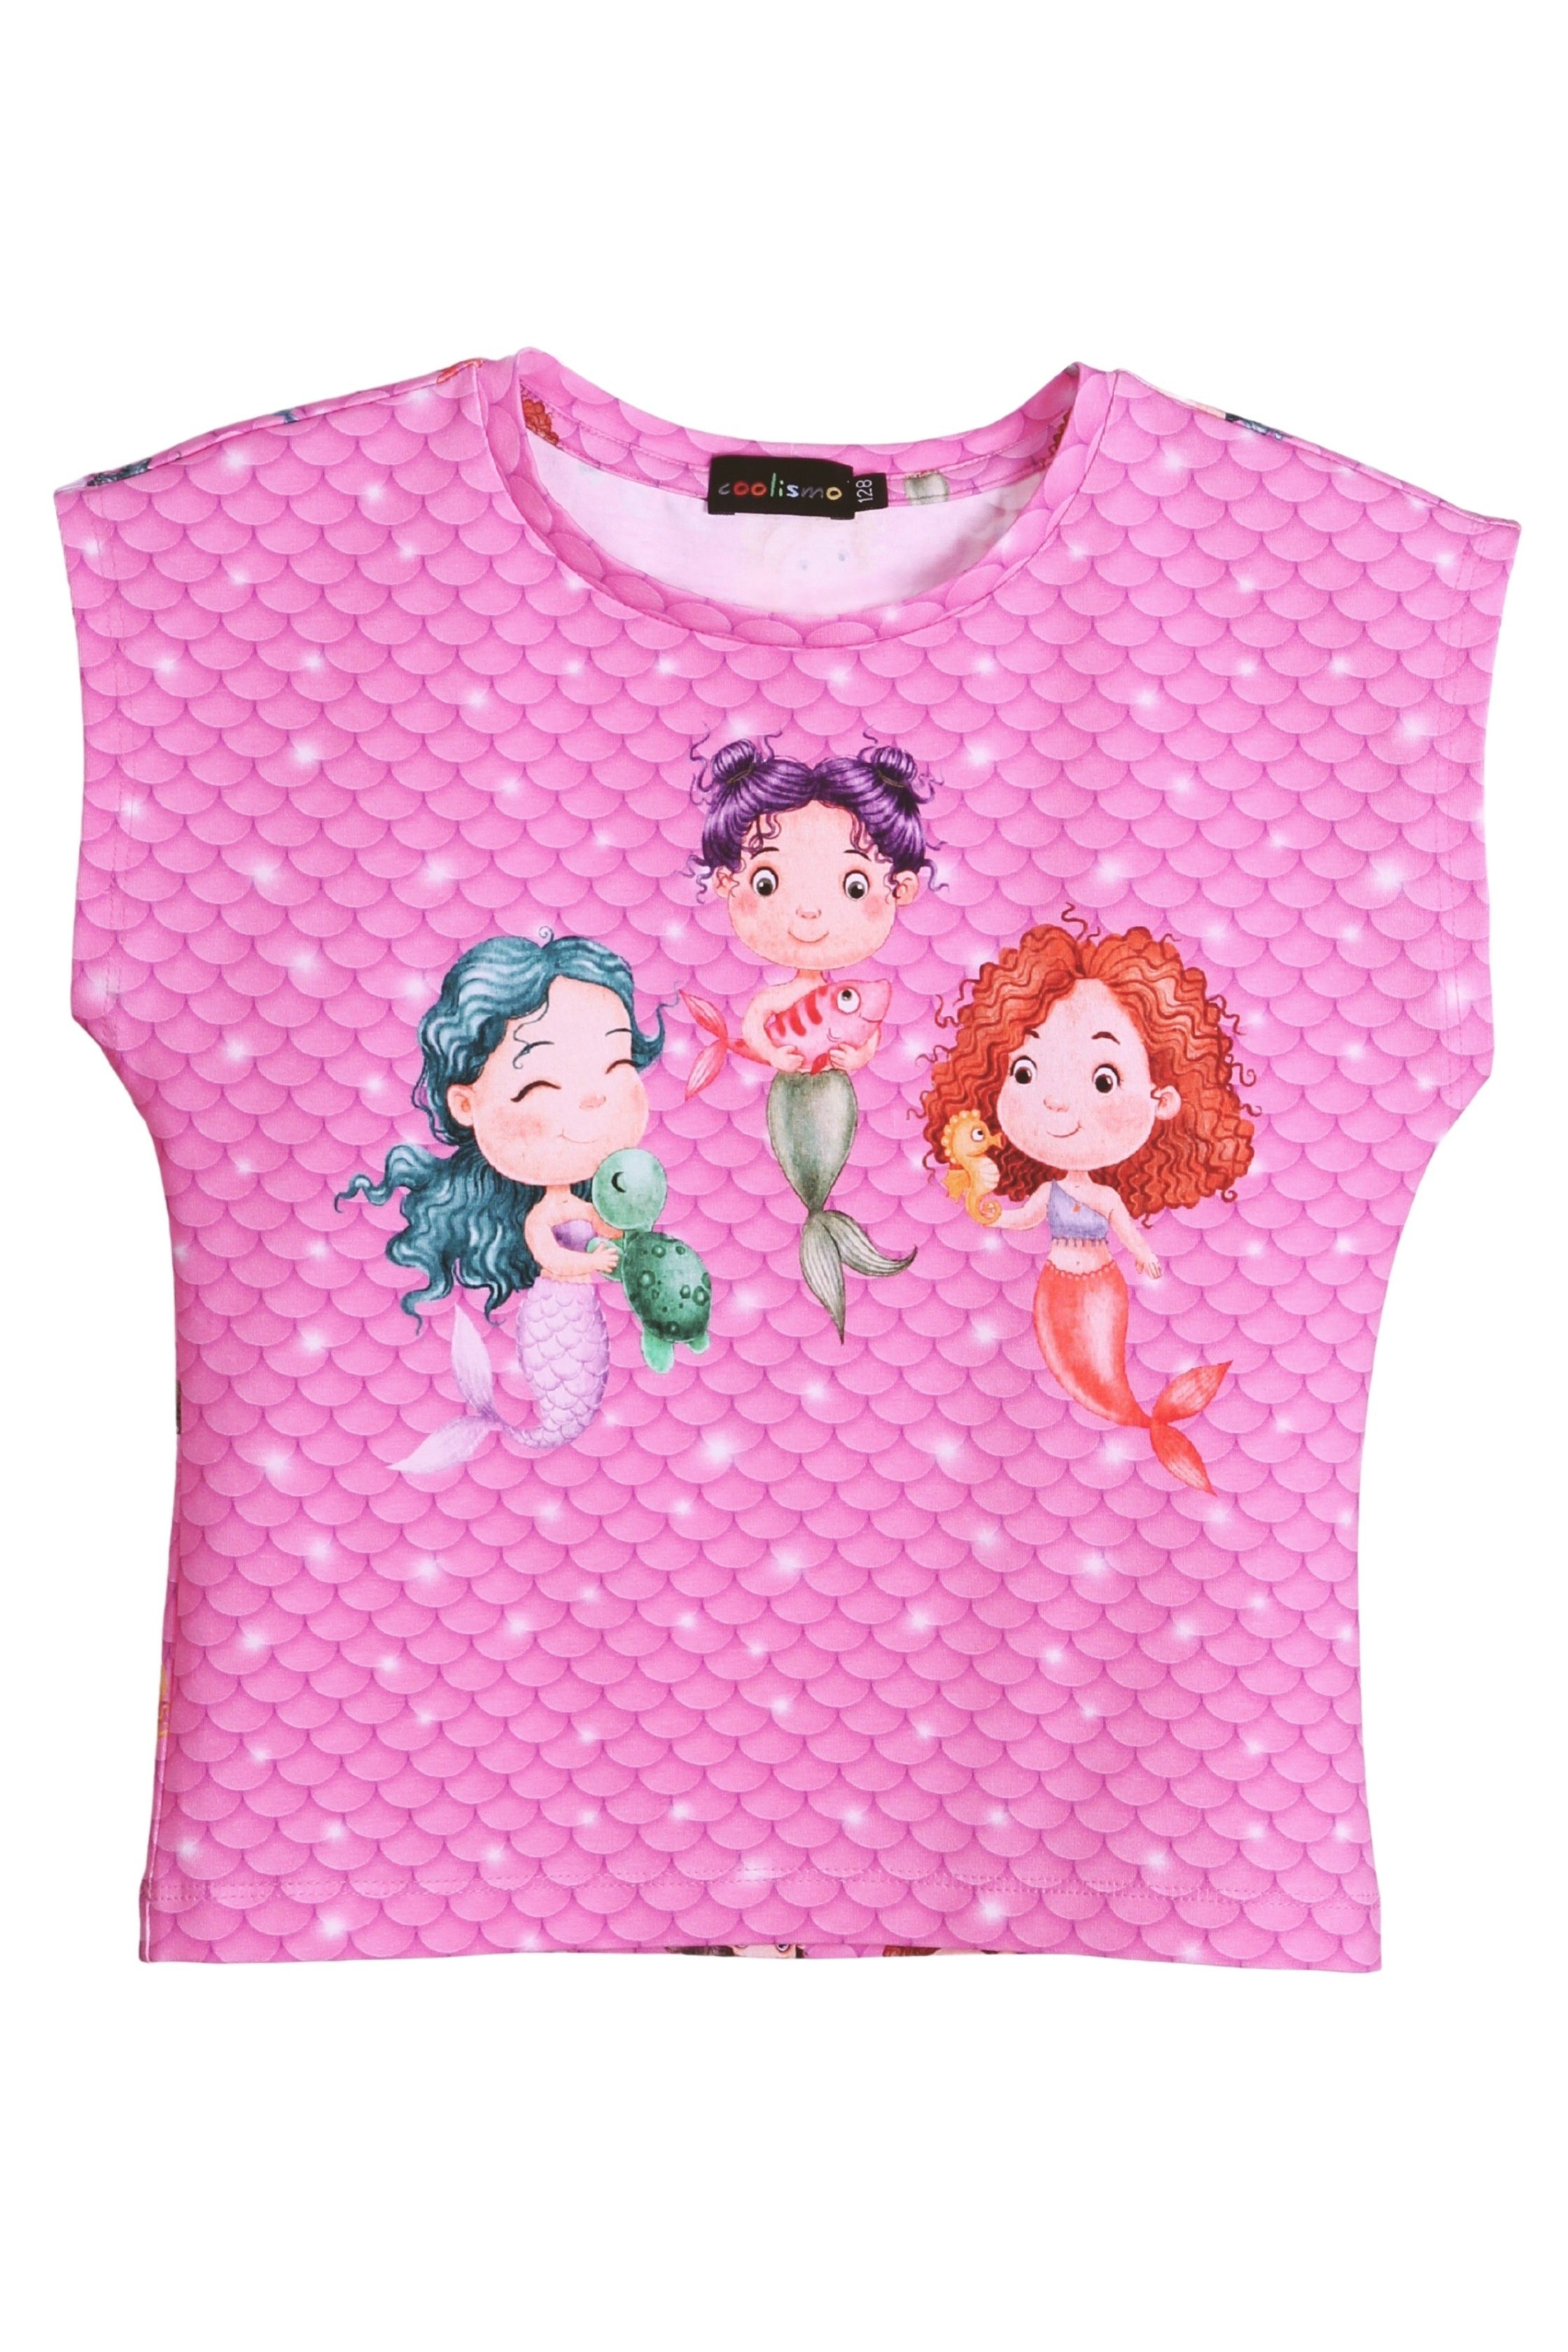 für T-Shirt Baumwolle, europäische Print-Shirt Motiv Mädchen Produktion Meerjungfrau coolismo